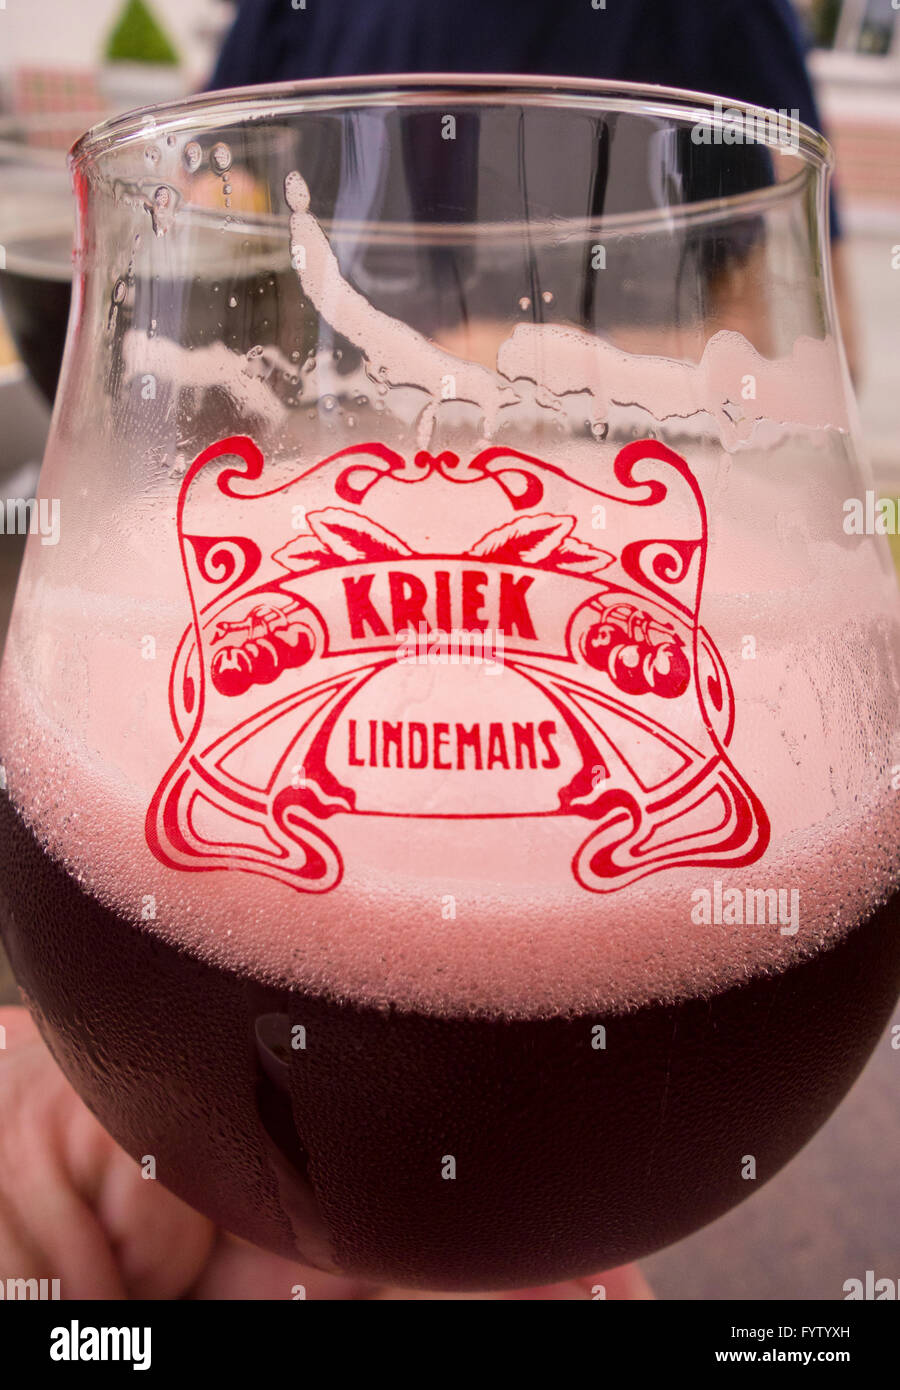 Belgien - Glas von Lindemans Kriek, aromatisierte Kirschbier aus Glas. Stockfoto